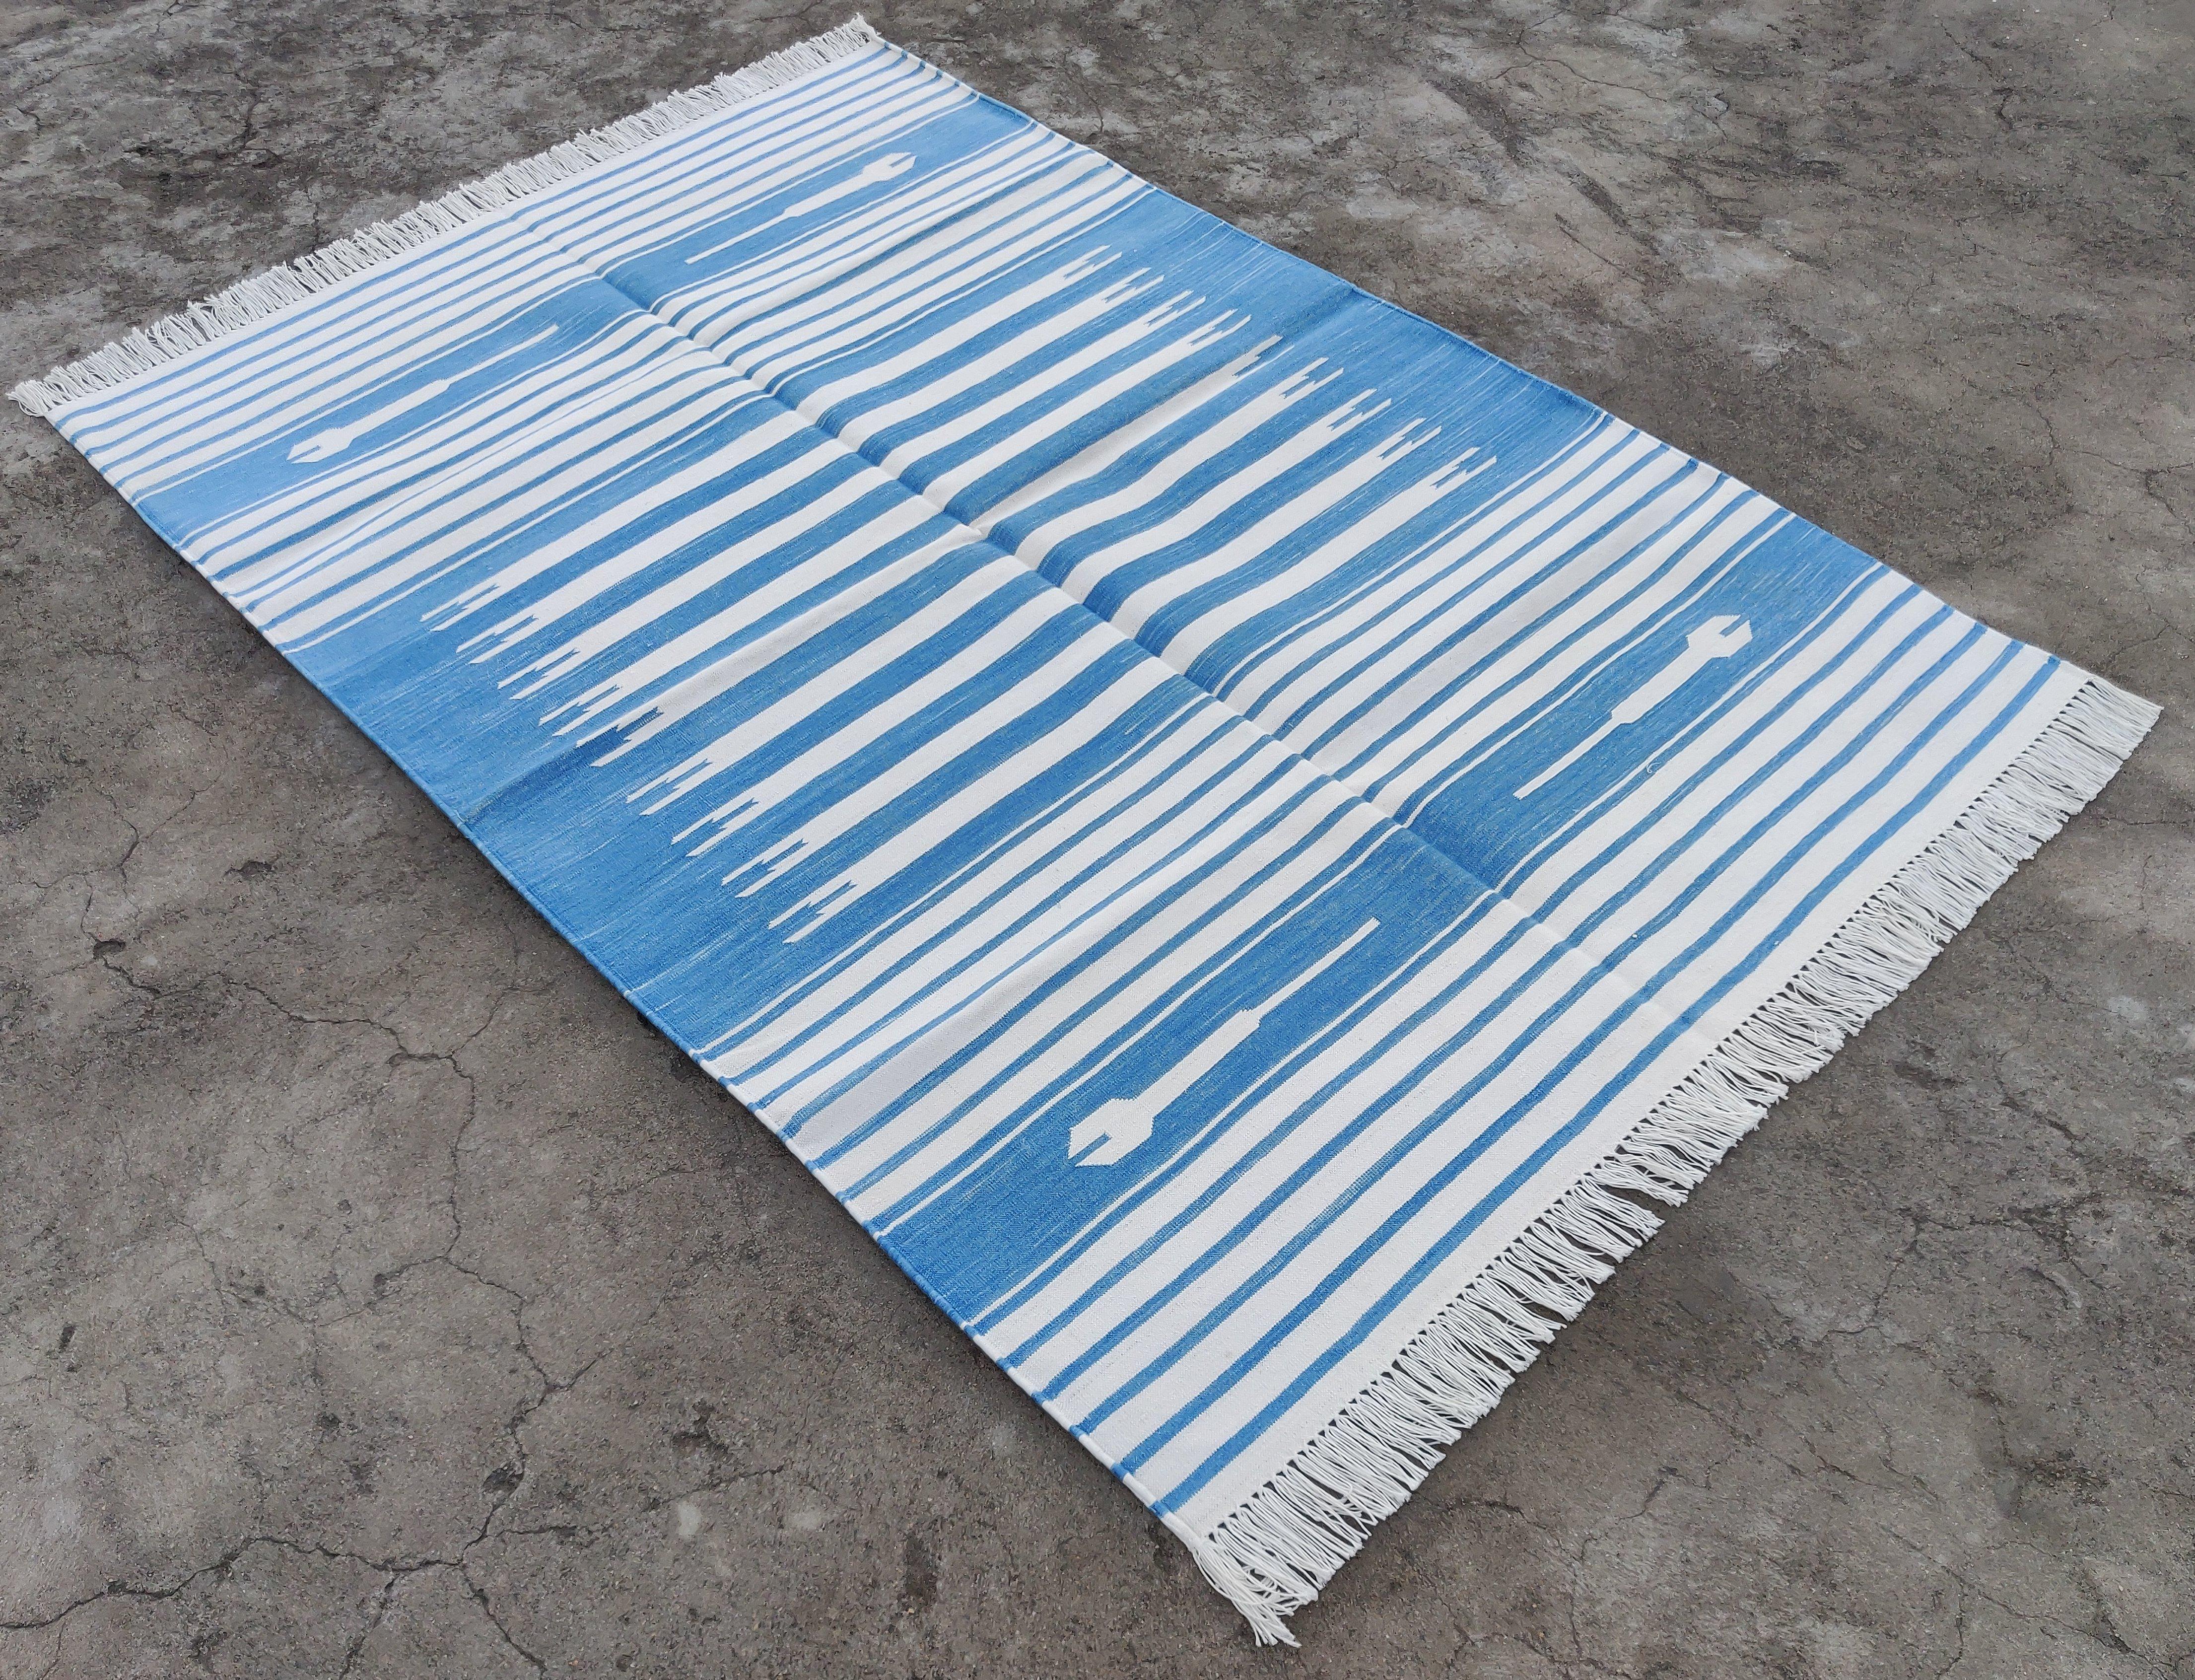 Vegetabil gefärbte Baumwolle Himmelblau und Weiß gestreift Indischer Dhurrie Teppich-4'x6' 

Diese speziellen flachgewebten Dhurries werden aus 15-fachem Garn aus 100% Baumwolle handgewebt. Aufgrund der speziellen Fertigungstechniken, die zur